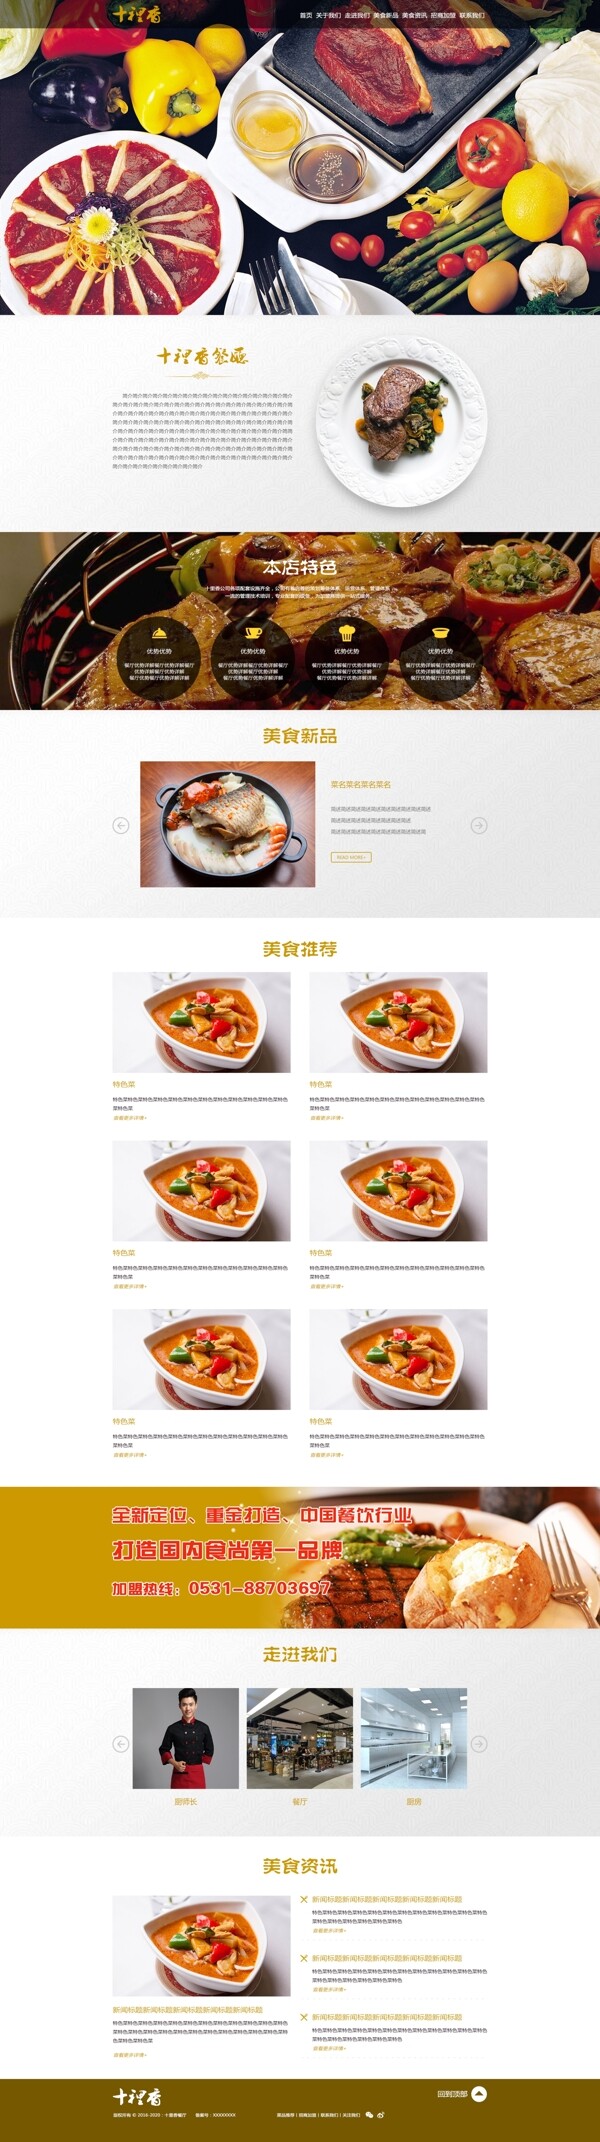 餐饮食品网站设计素材